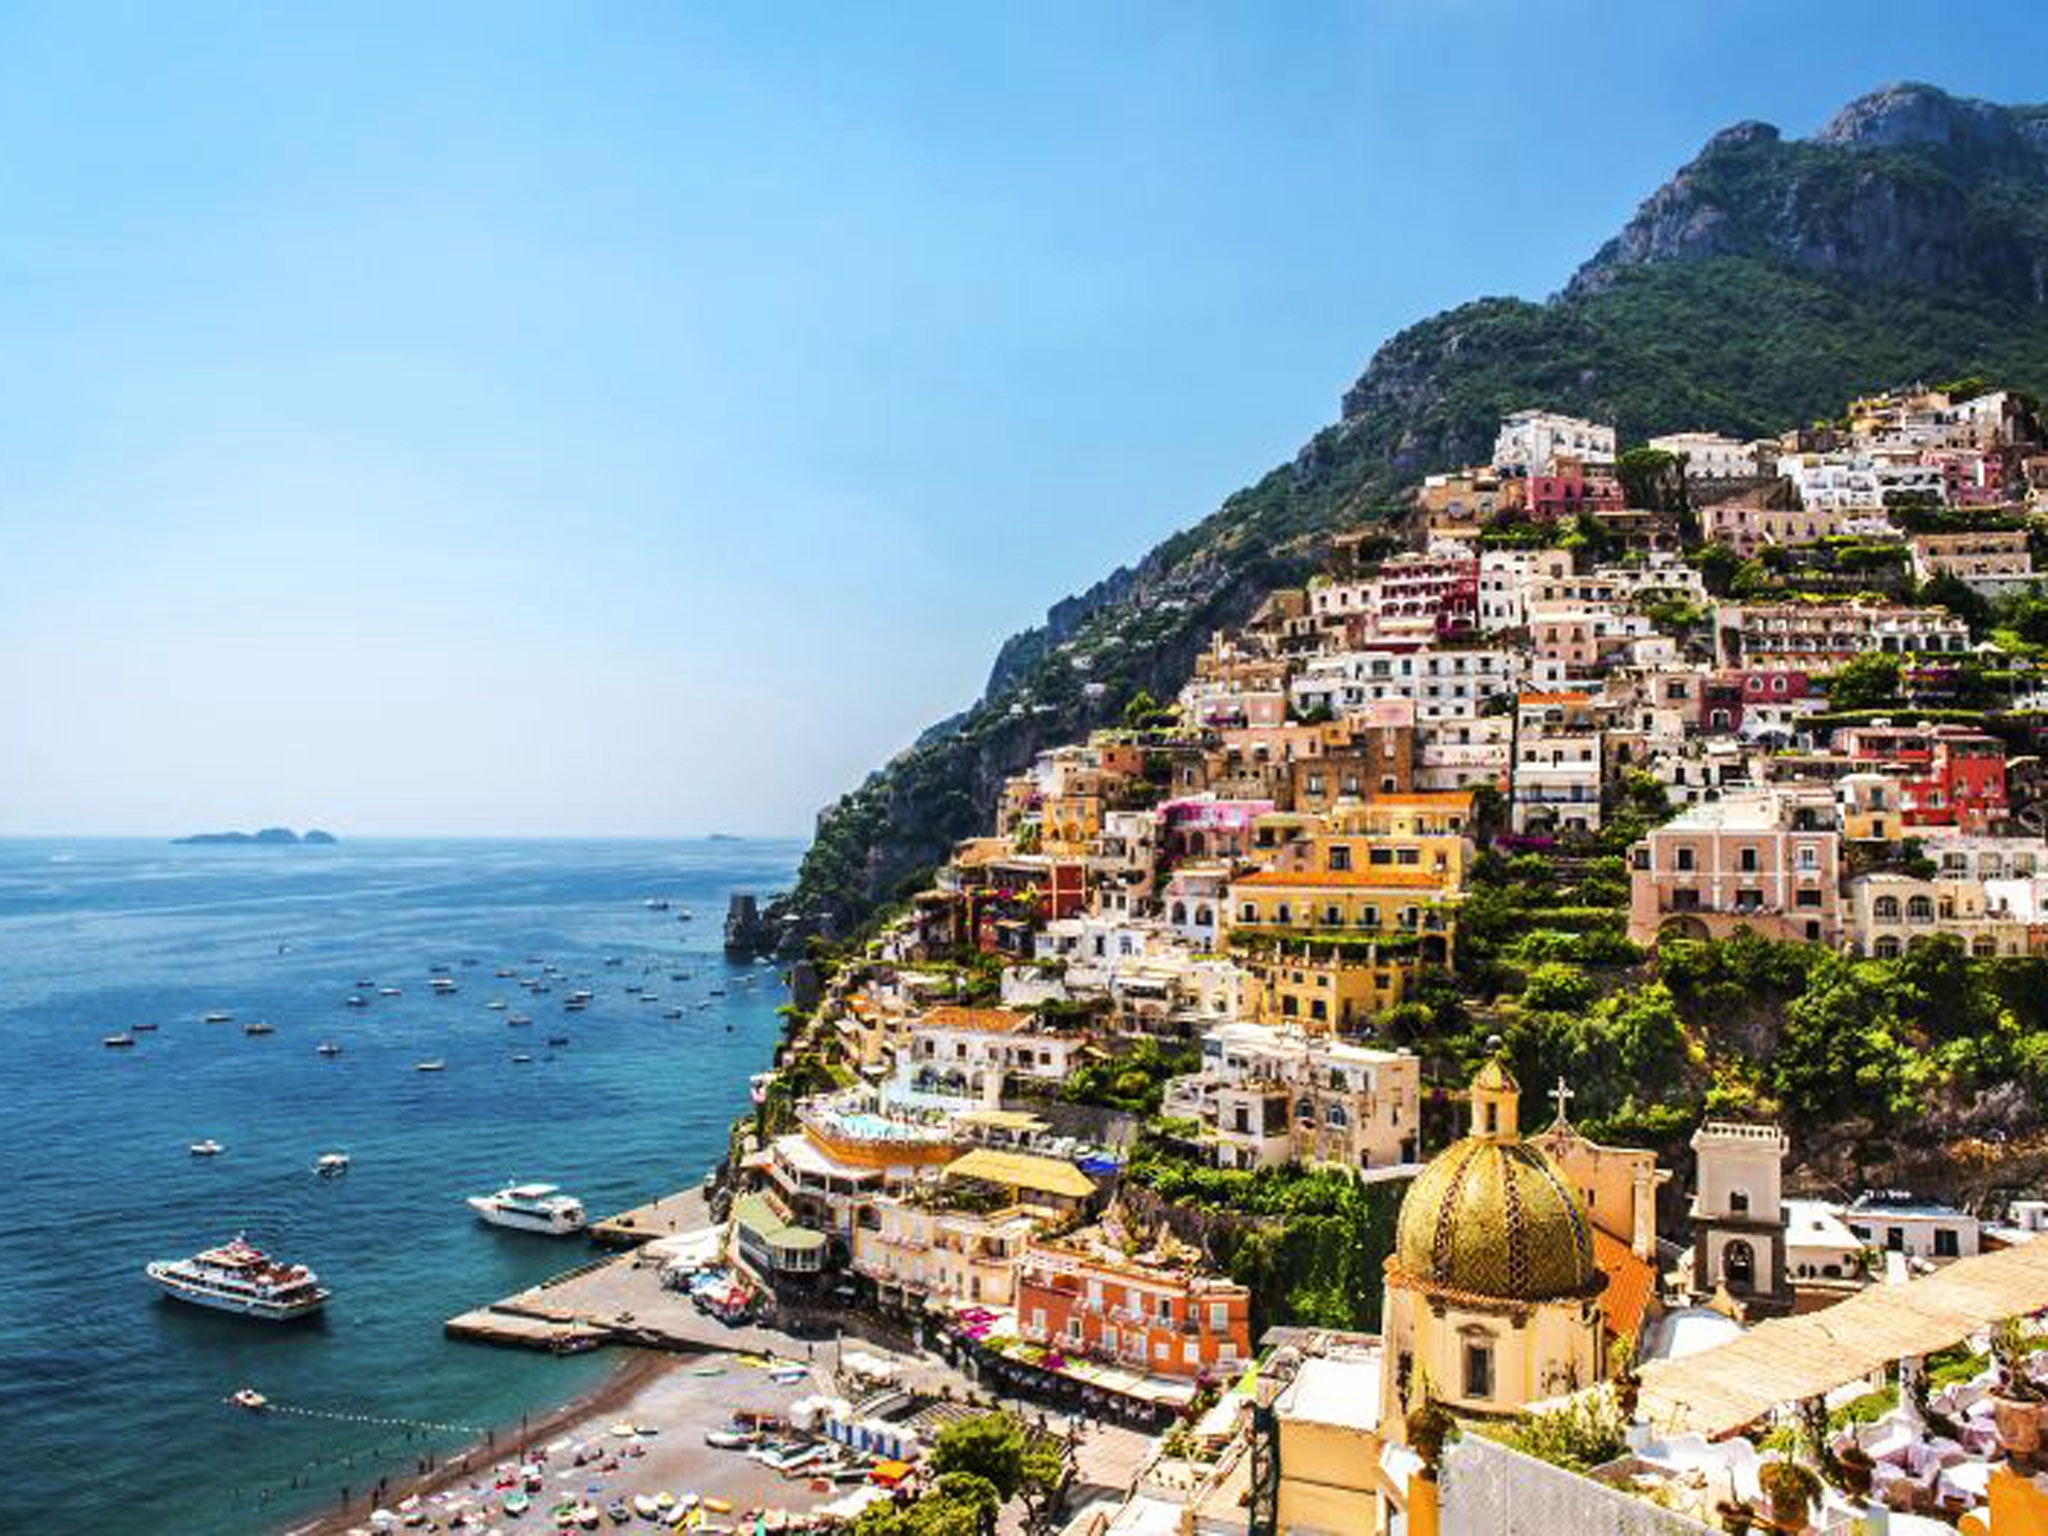 Picture perfect: the Amalfi Coast